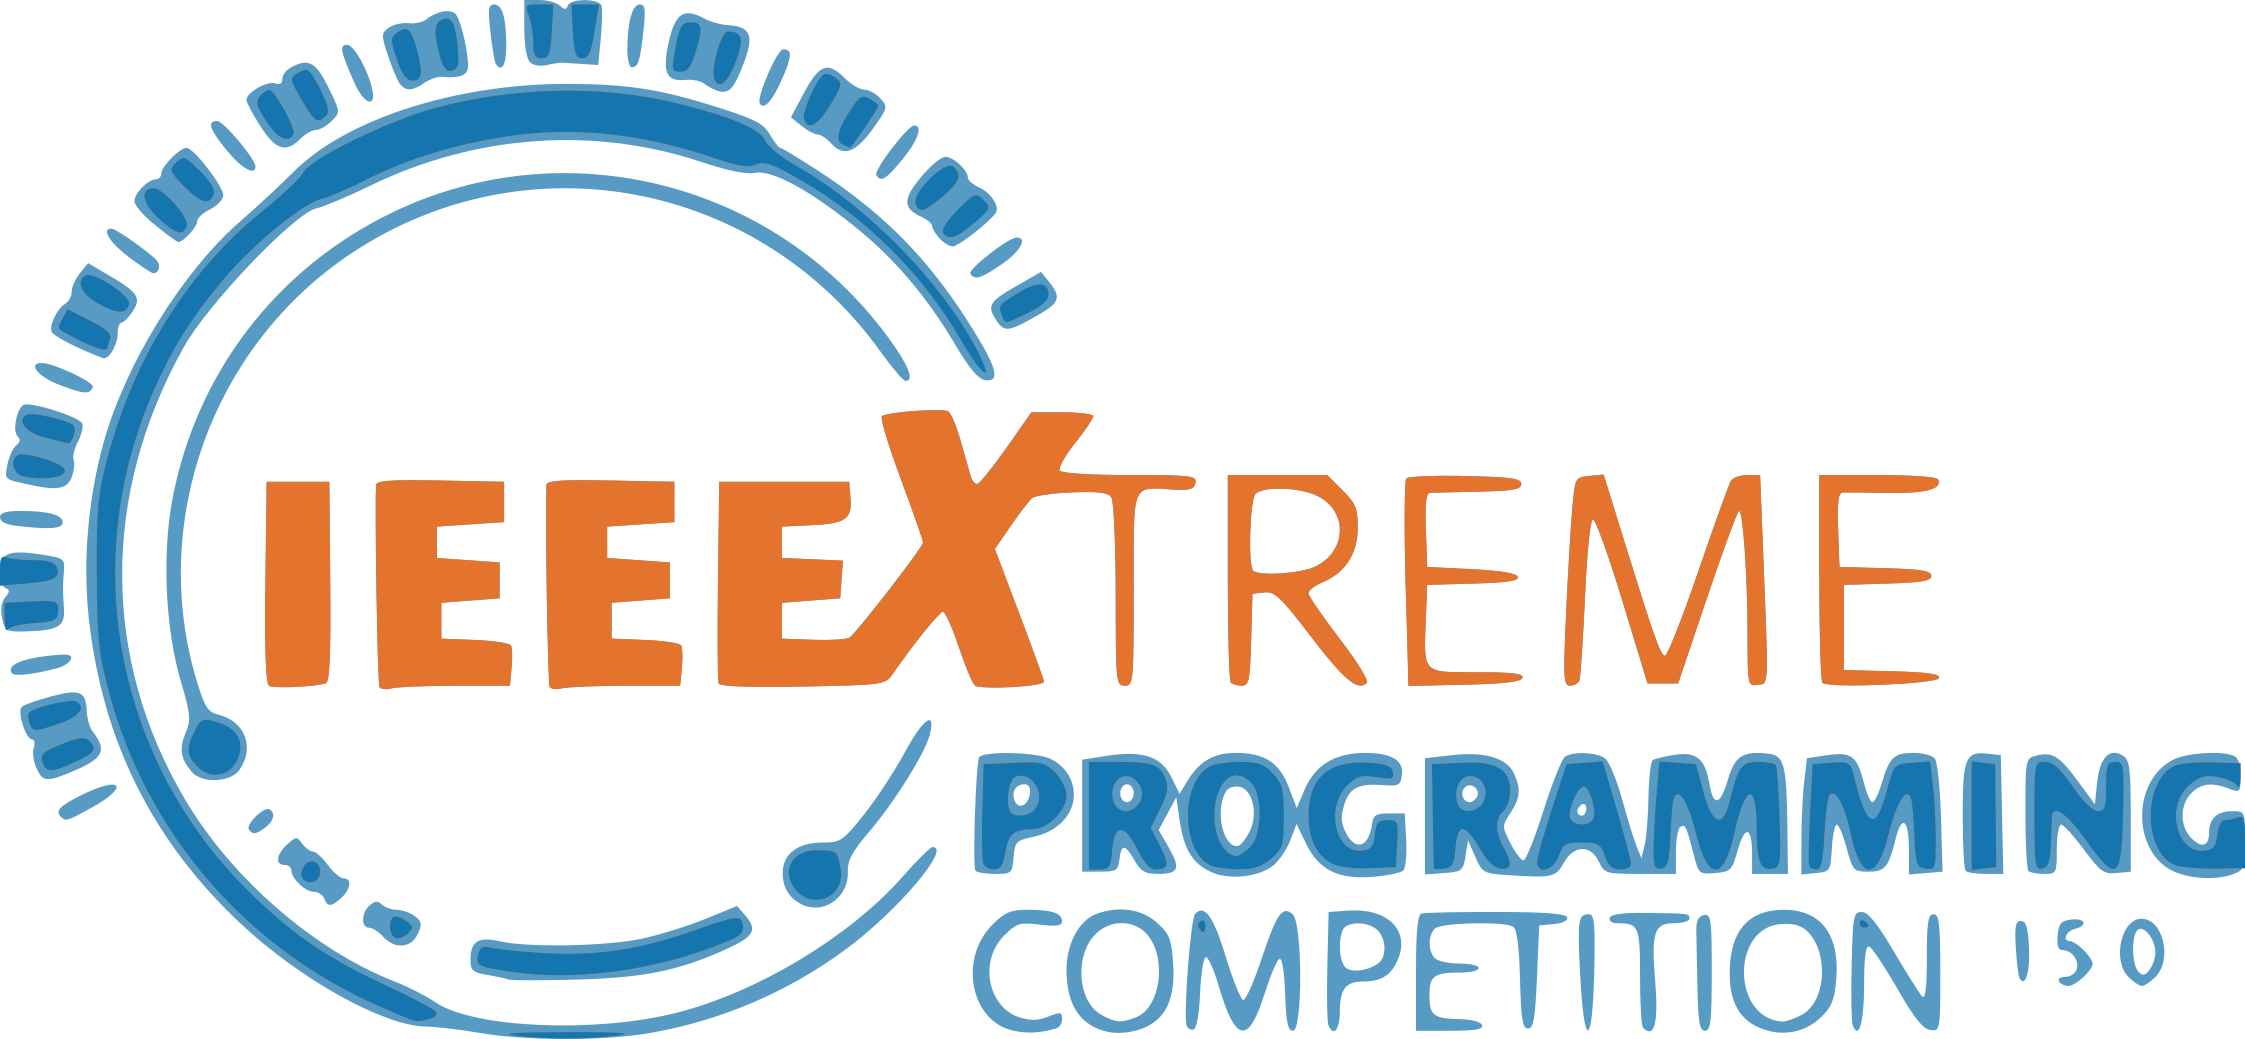 IEEEXtreme 